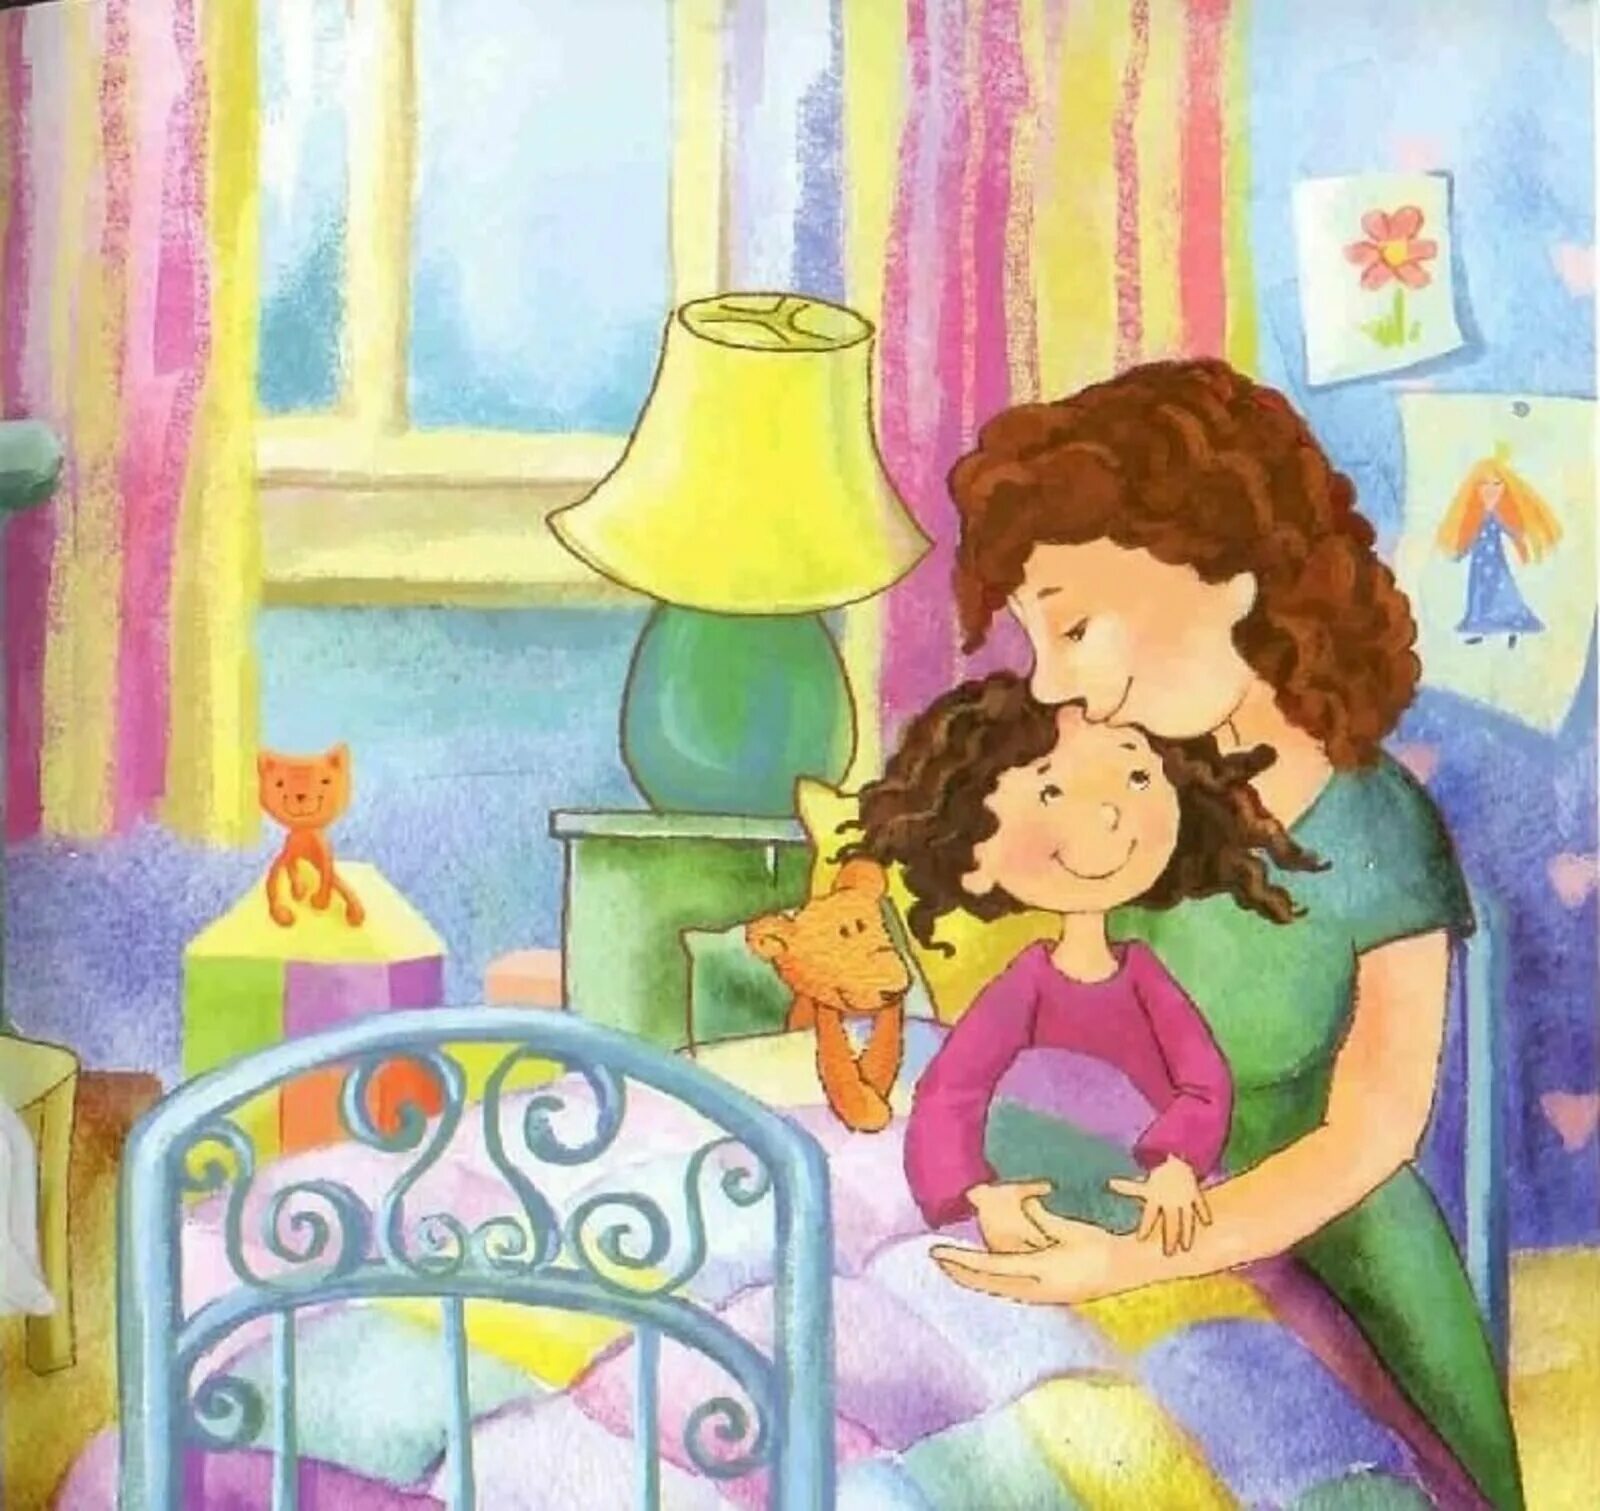 Читать стань моей мамой. Мама с ребенком рисунок. Дети иллюстрация. Вечер для детей. Картина мамы длдетей.